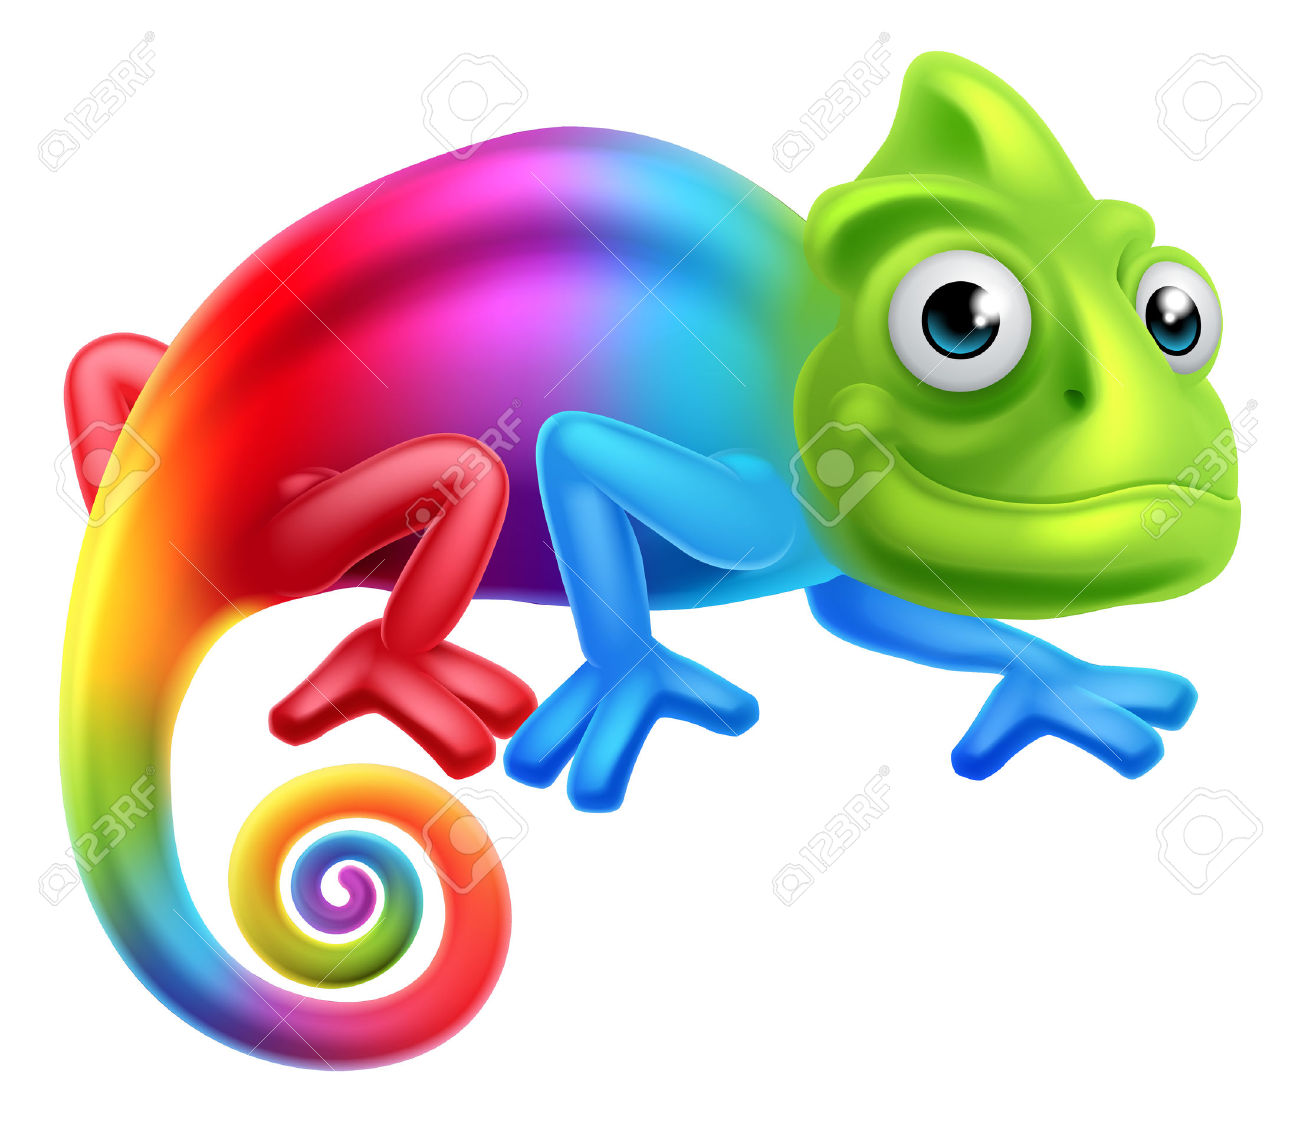 A Cute Cartoon Rainbow Coloured Multicoloured Chameleon Lizard.